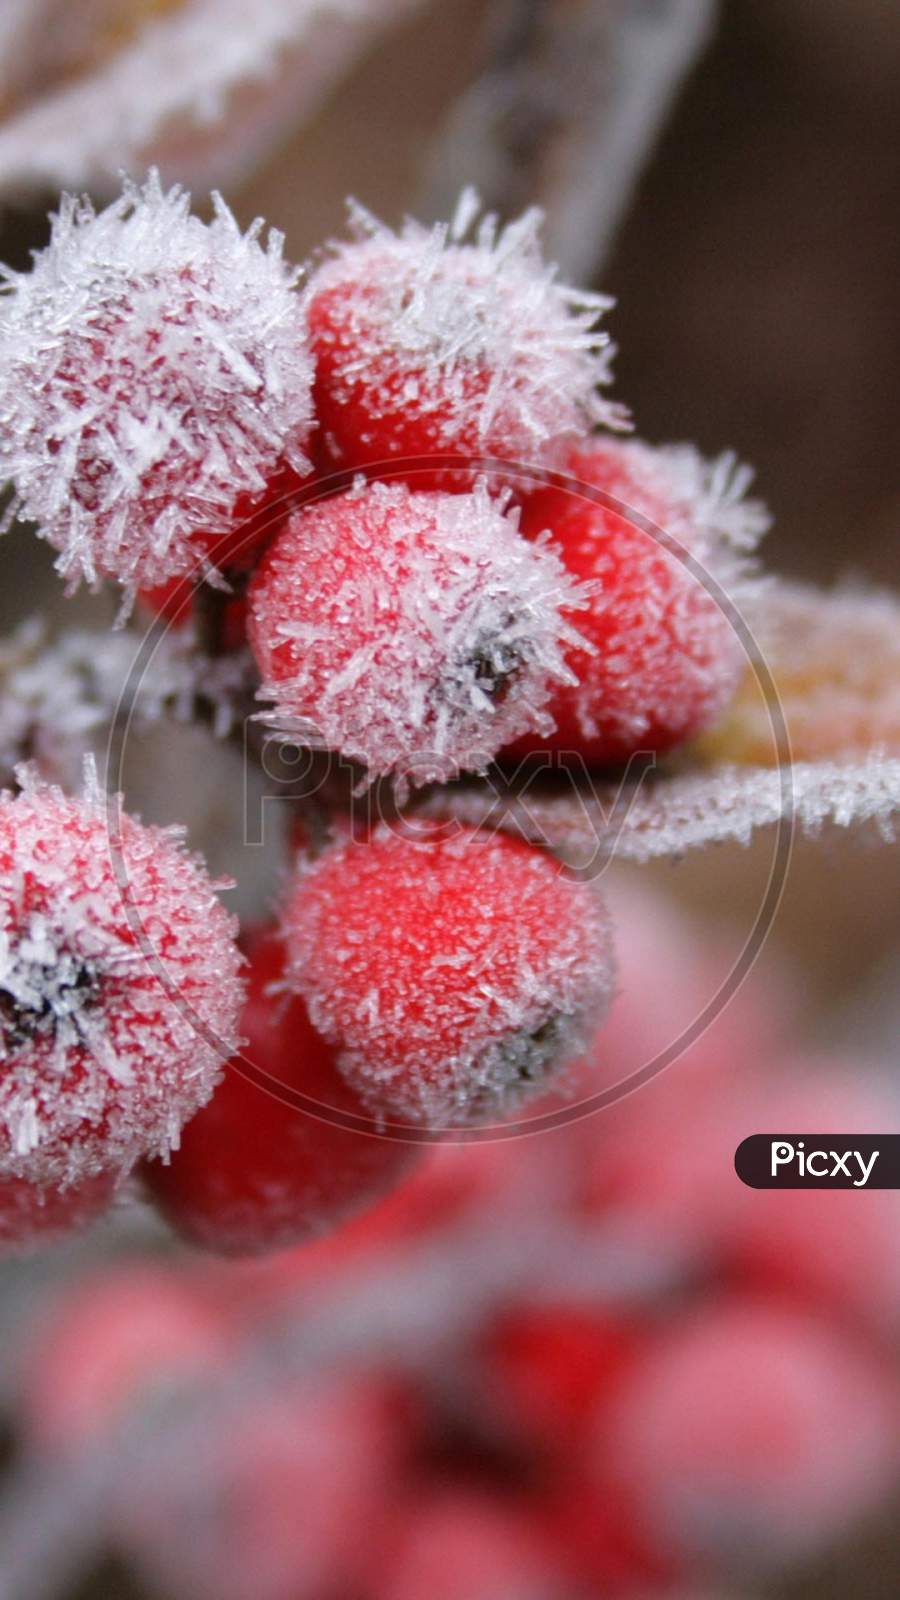 red fruit freezing Macro Photography